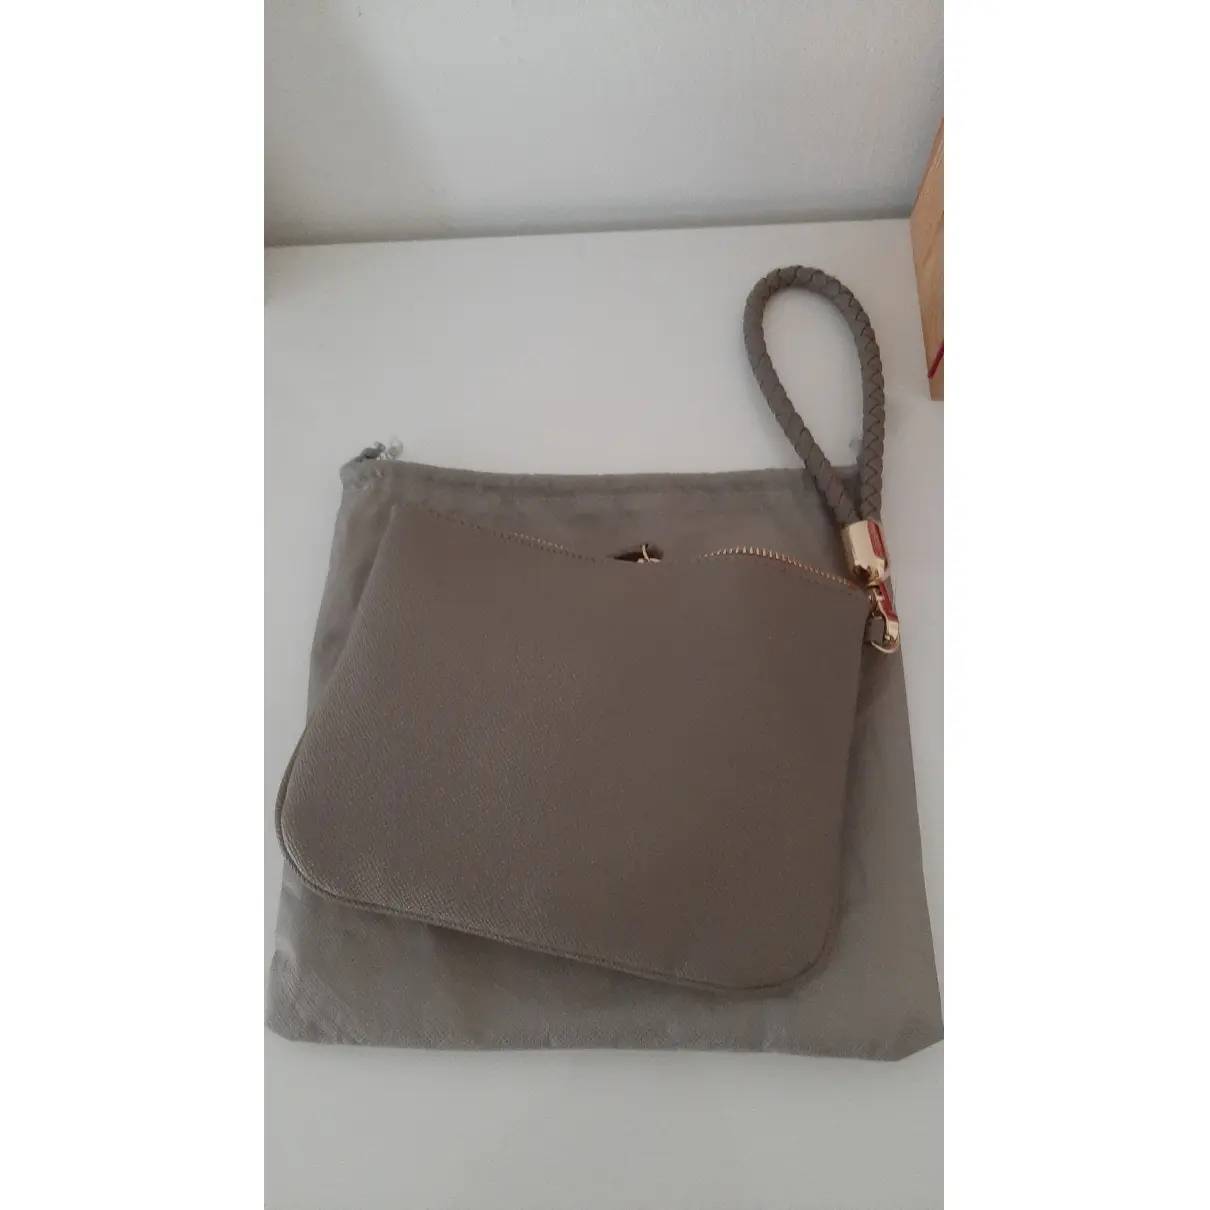 Buy Liu.Jo Leather clutch bag online